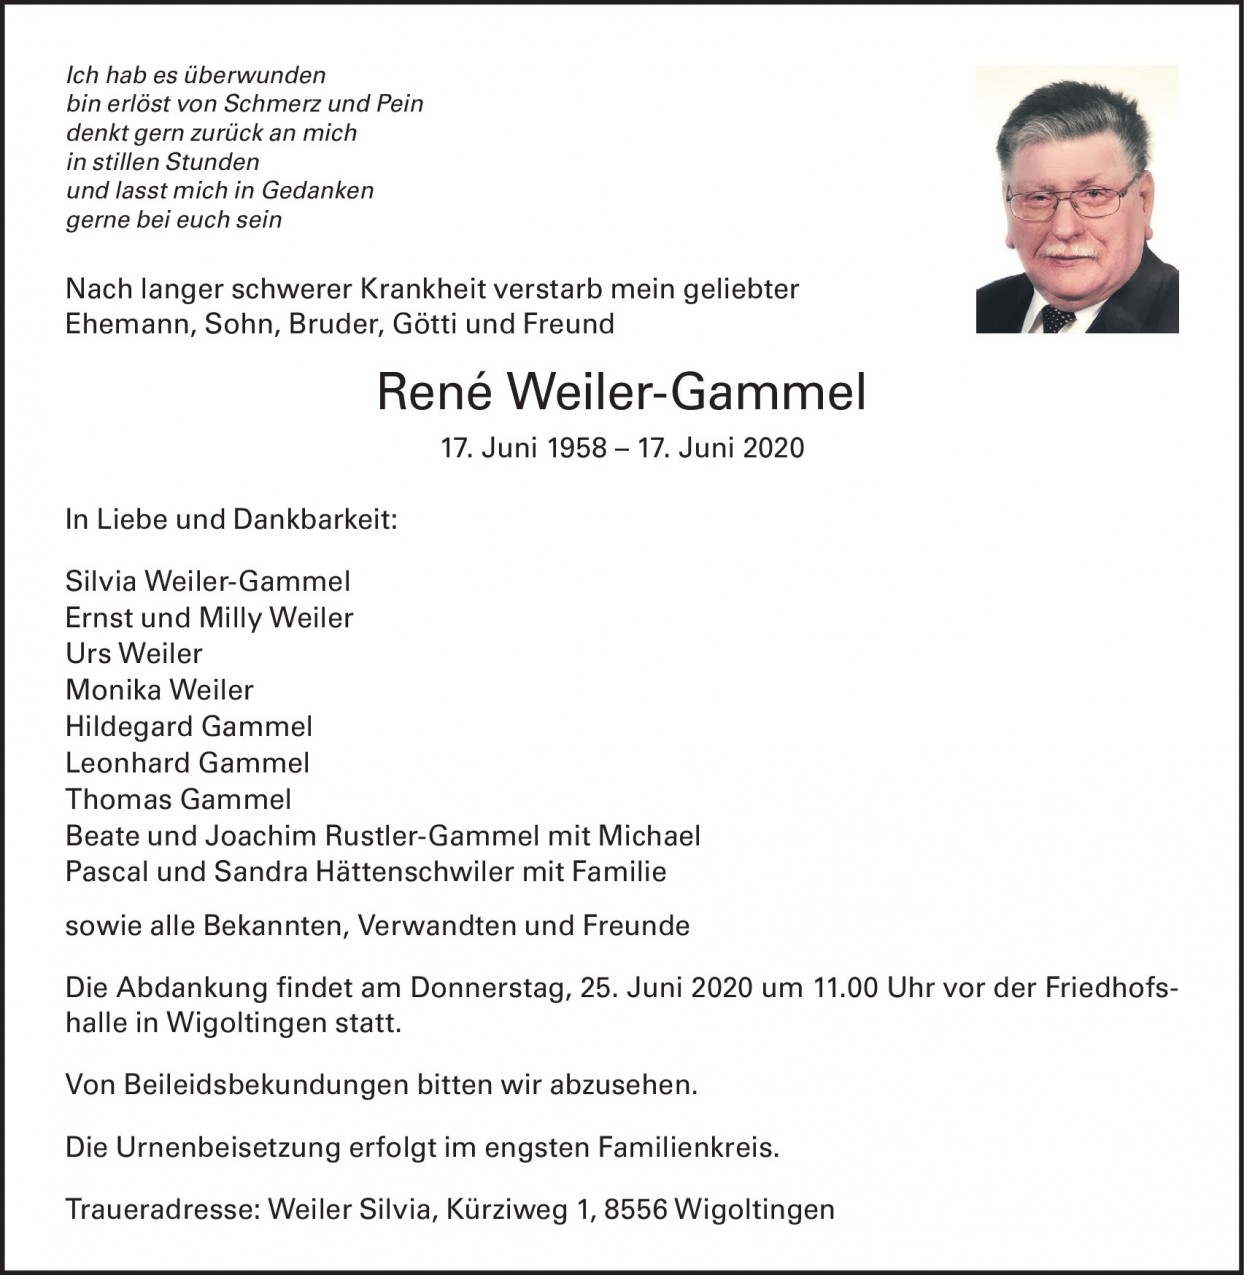 René Weiler-Gammel